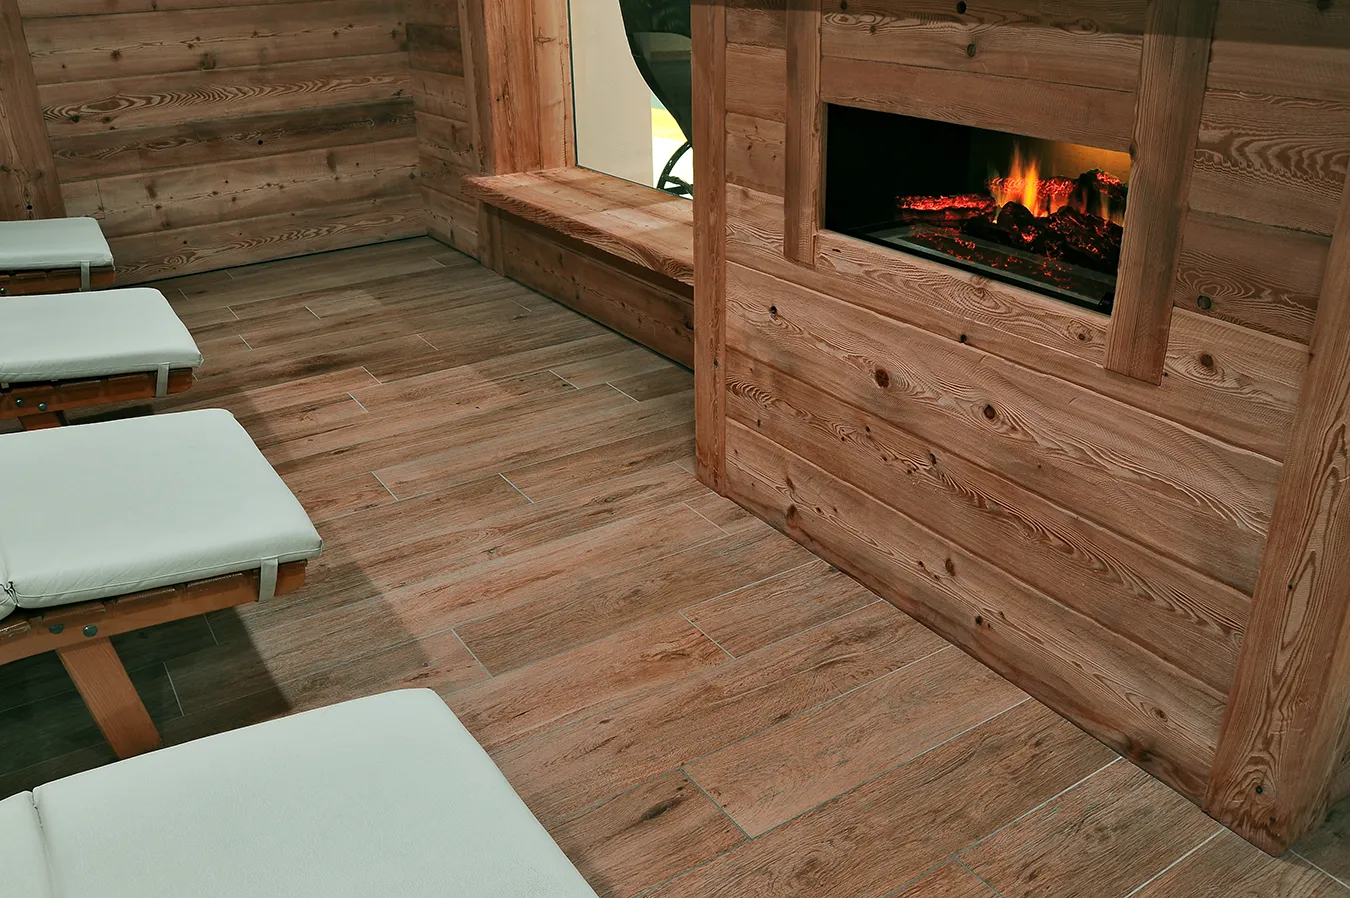 Accogliente angolo relax con pavimento effetto legno della collezione Evoke, che armonizza con l'ambiente rustico e il caminetto elettrico.